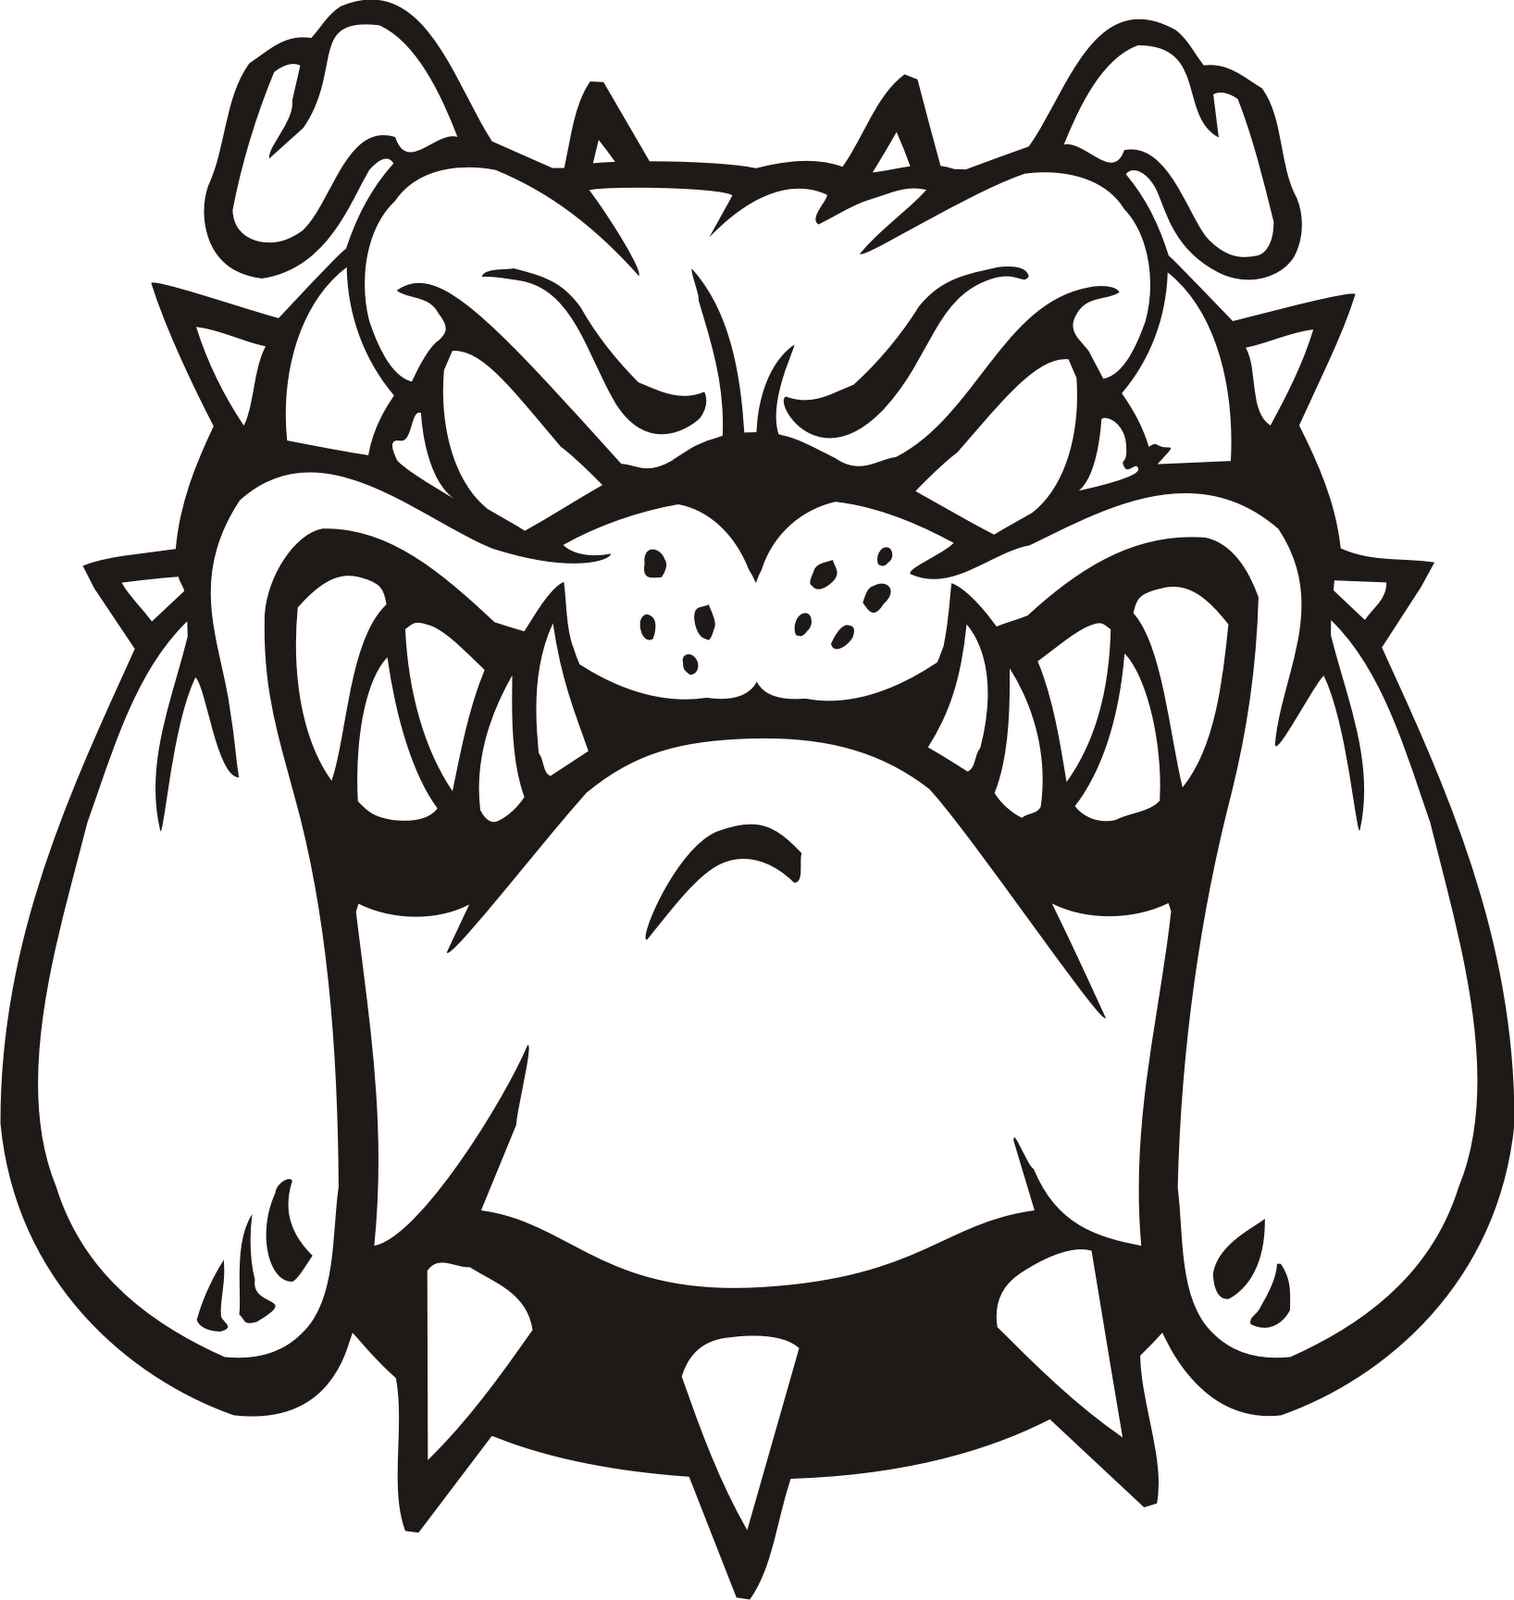 Bulldog Mascot Basketball Cli